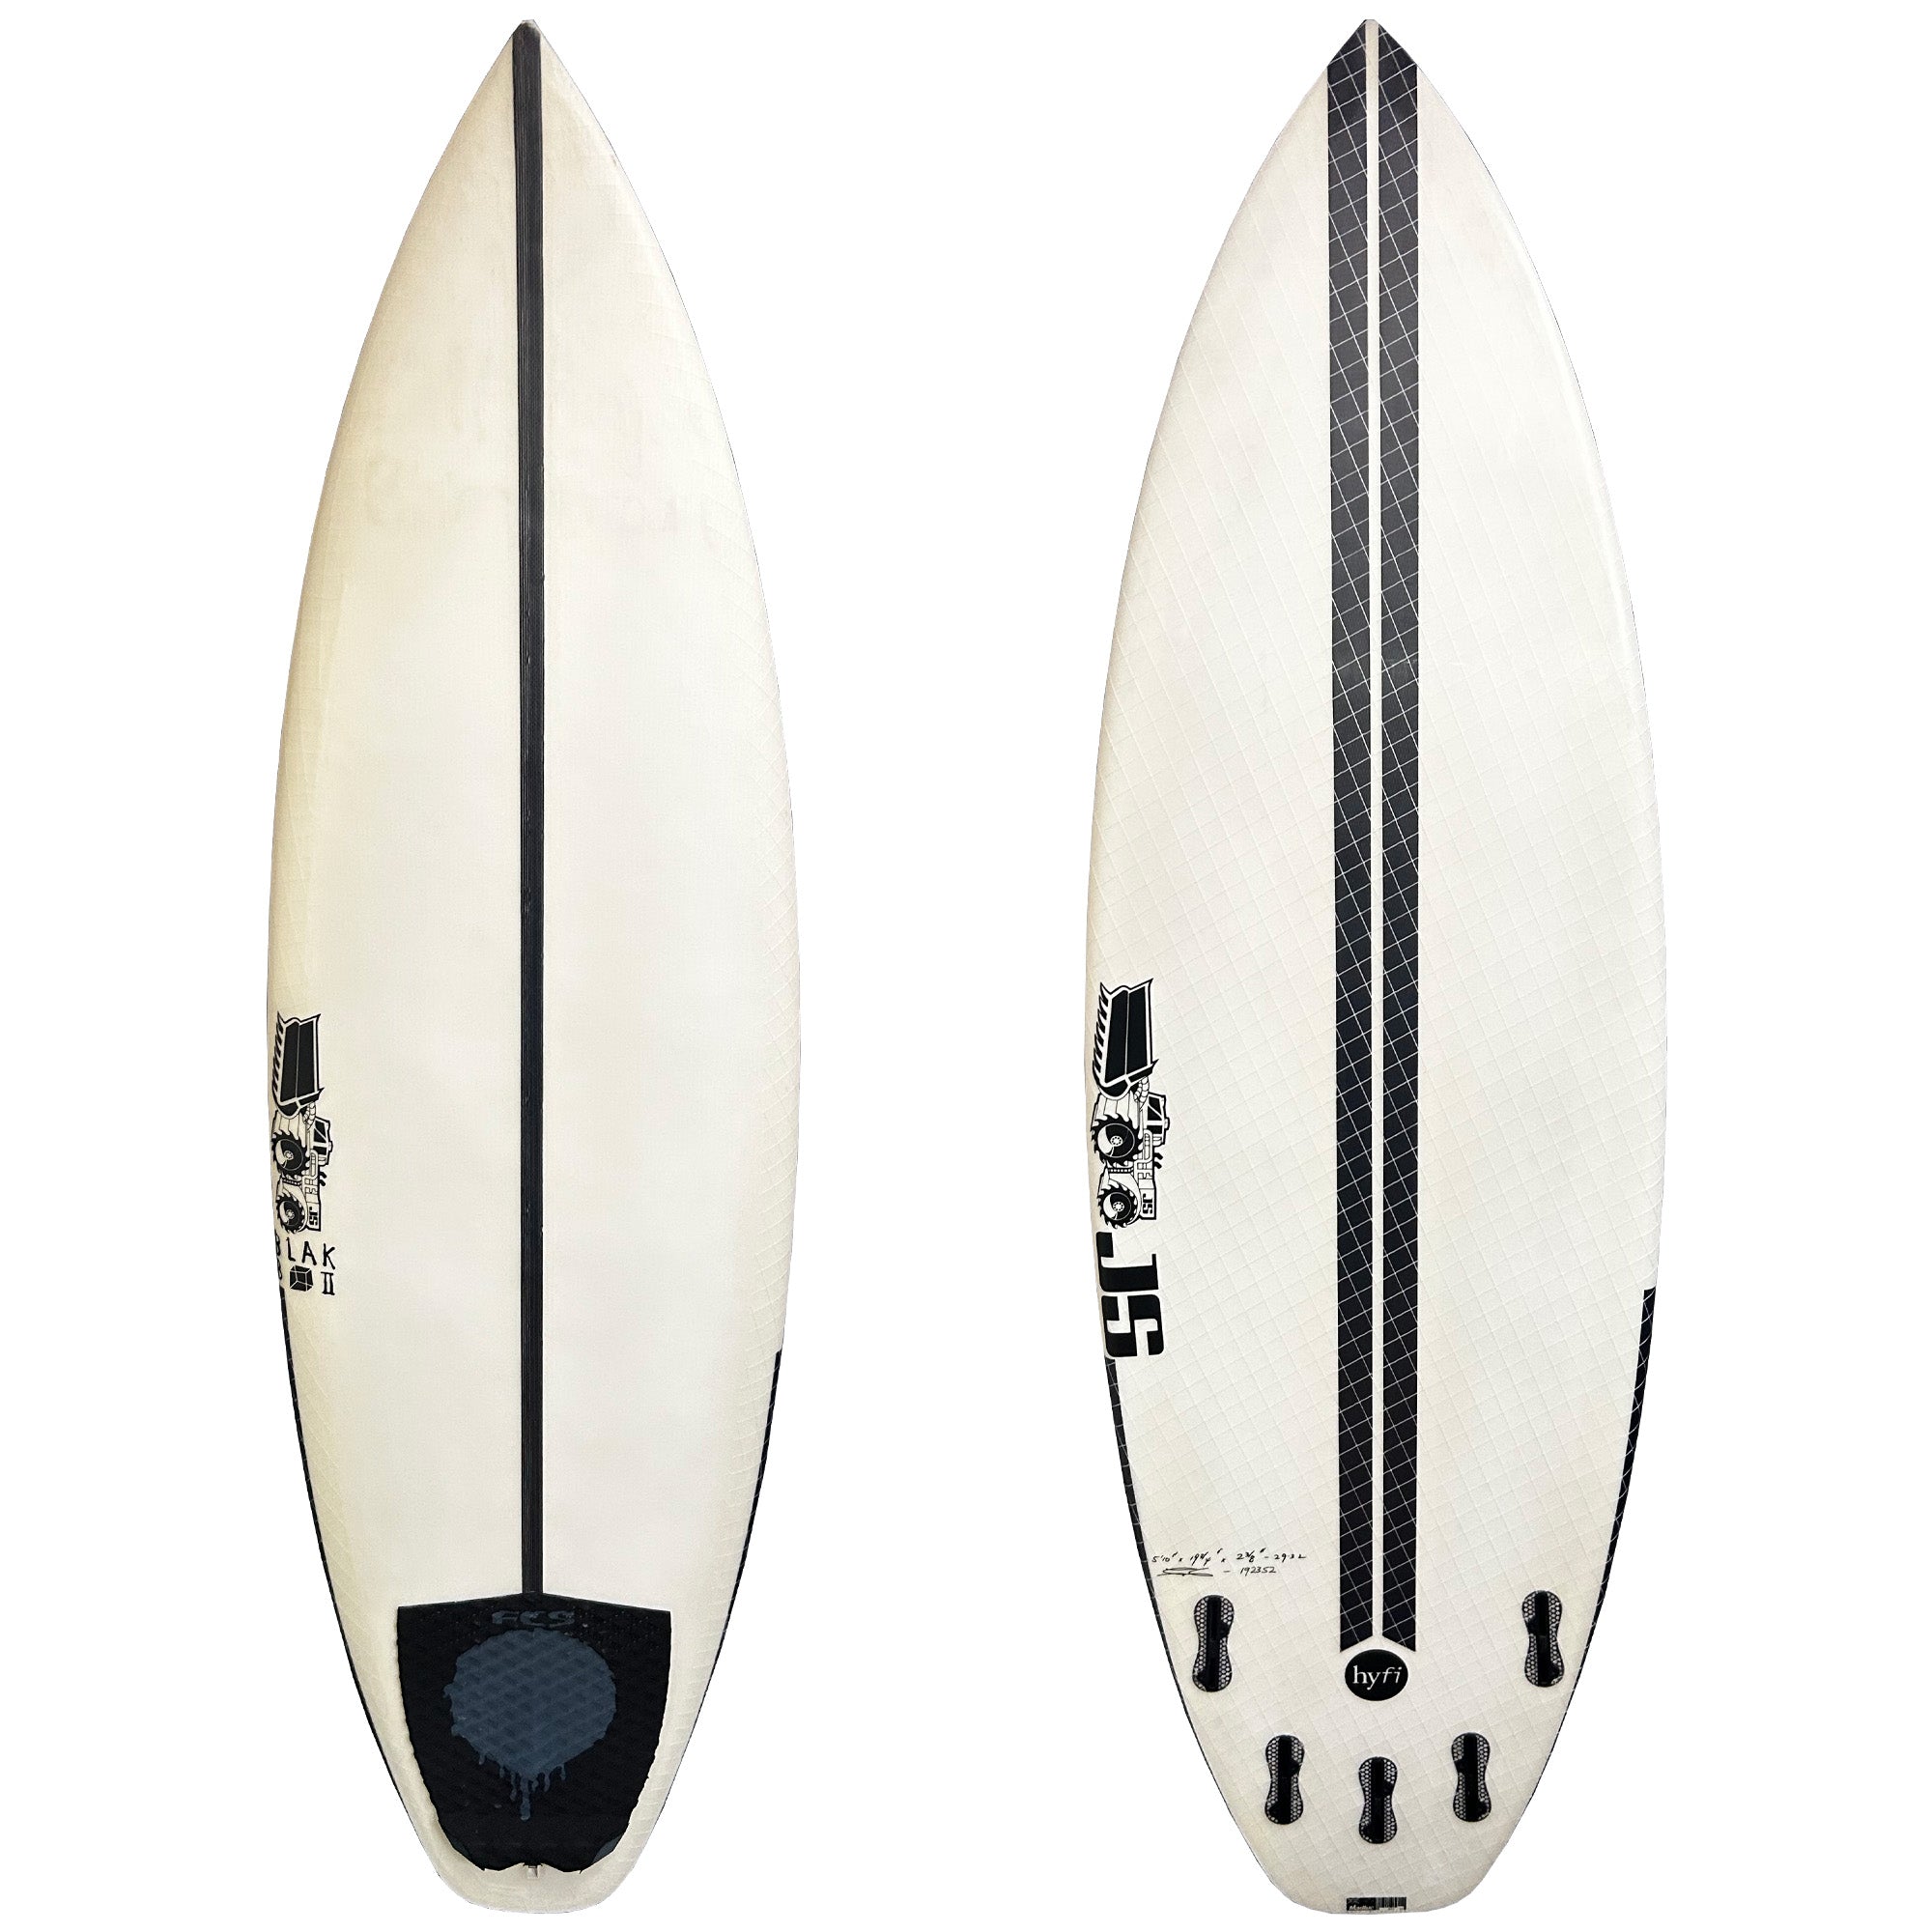 JS Blak Box 2 5'10 Used Surfboard